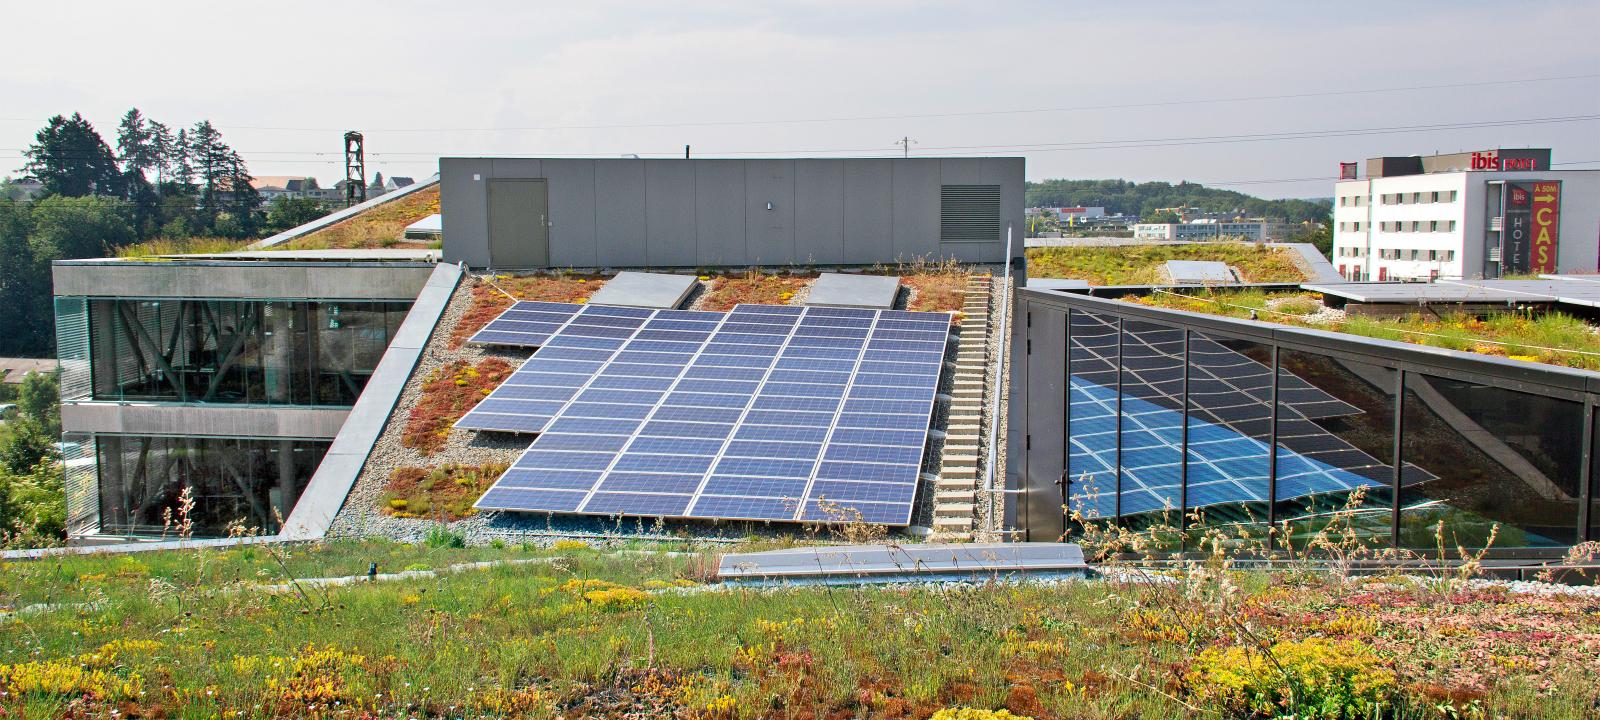 Végétalisation de toit et installation solaire